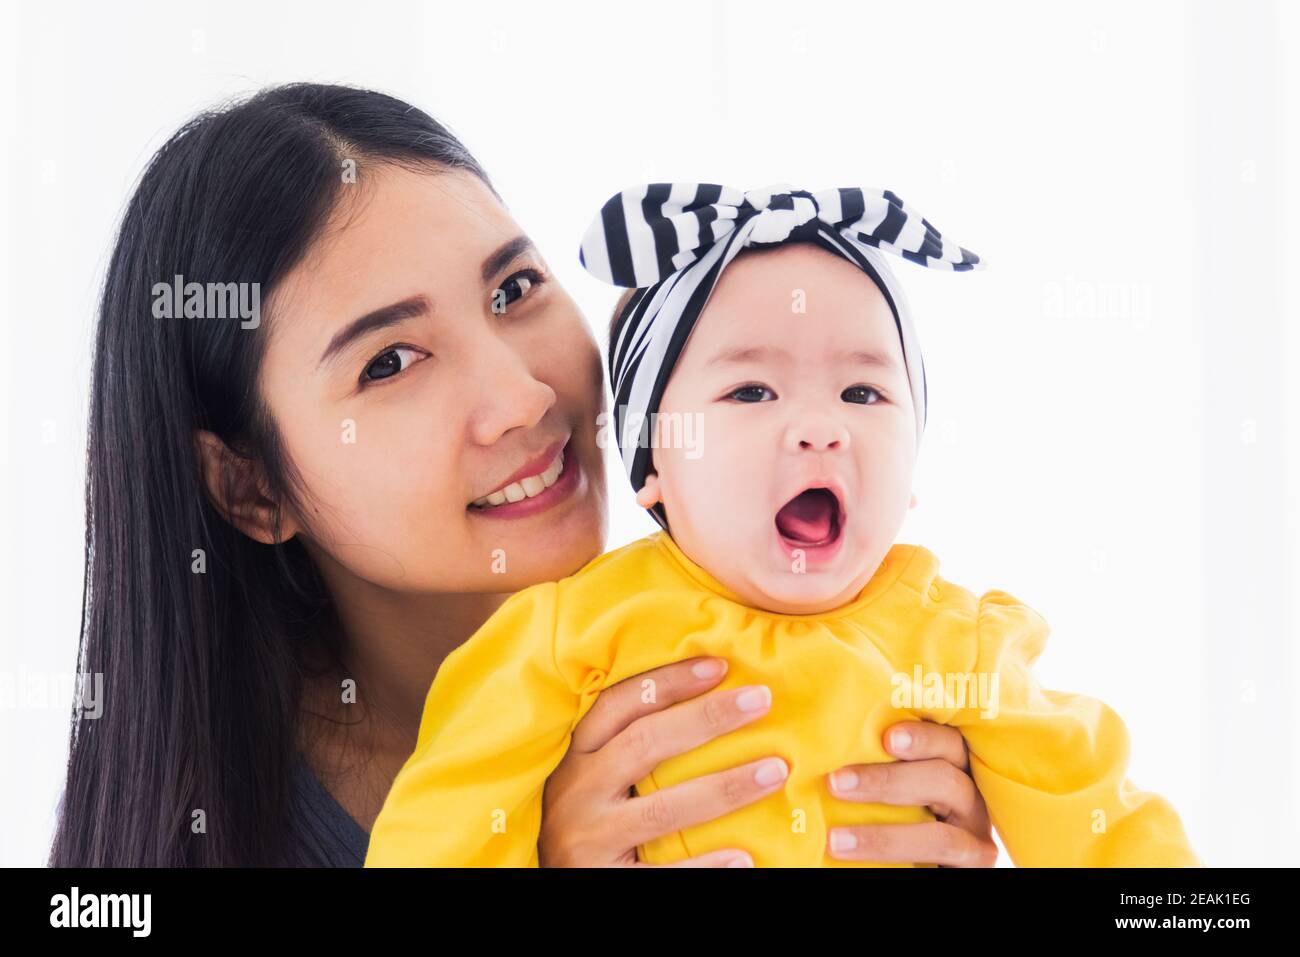 madre jugando y sonriendo con su bebé recién nacido Foto de stock